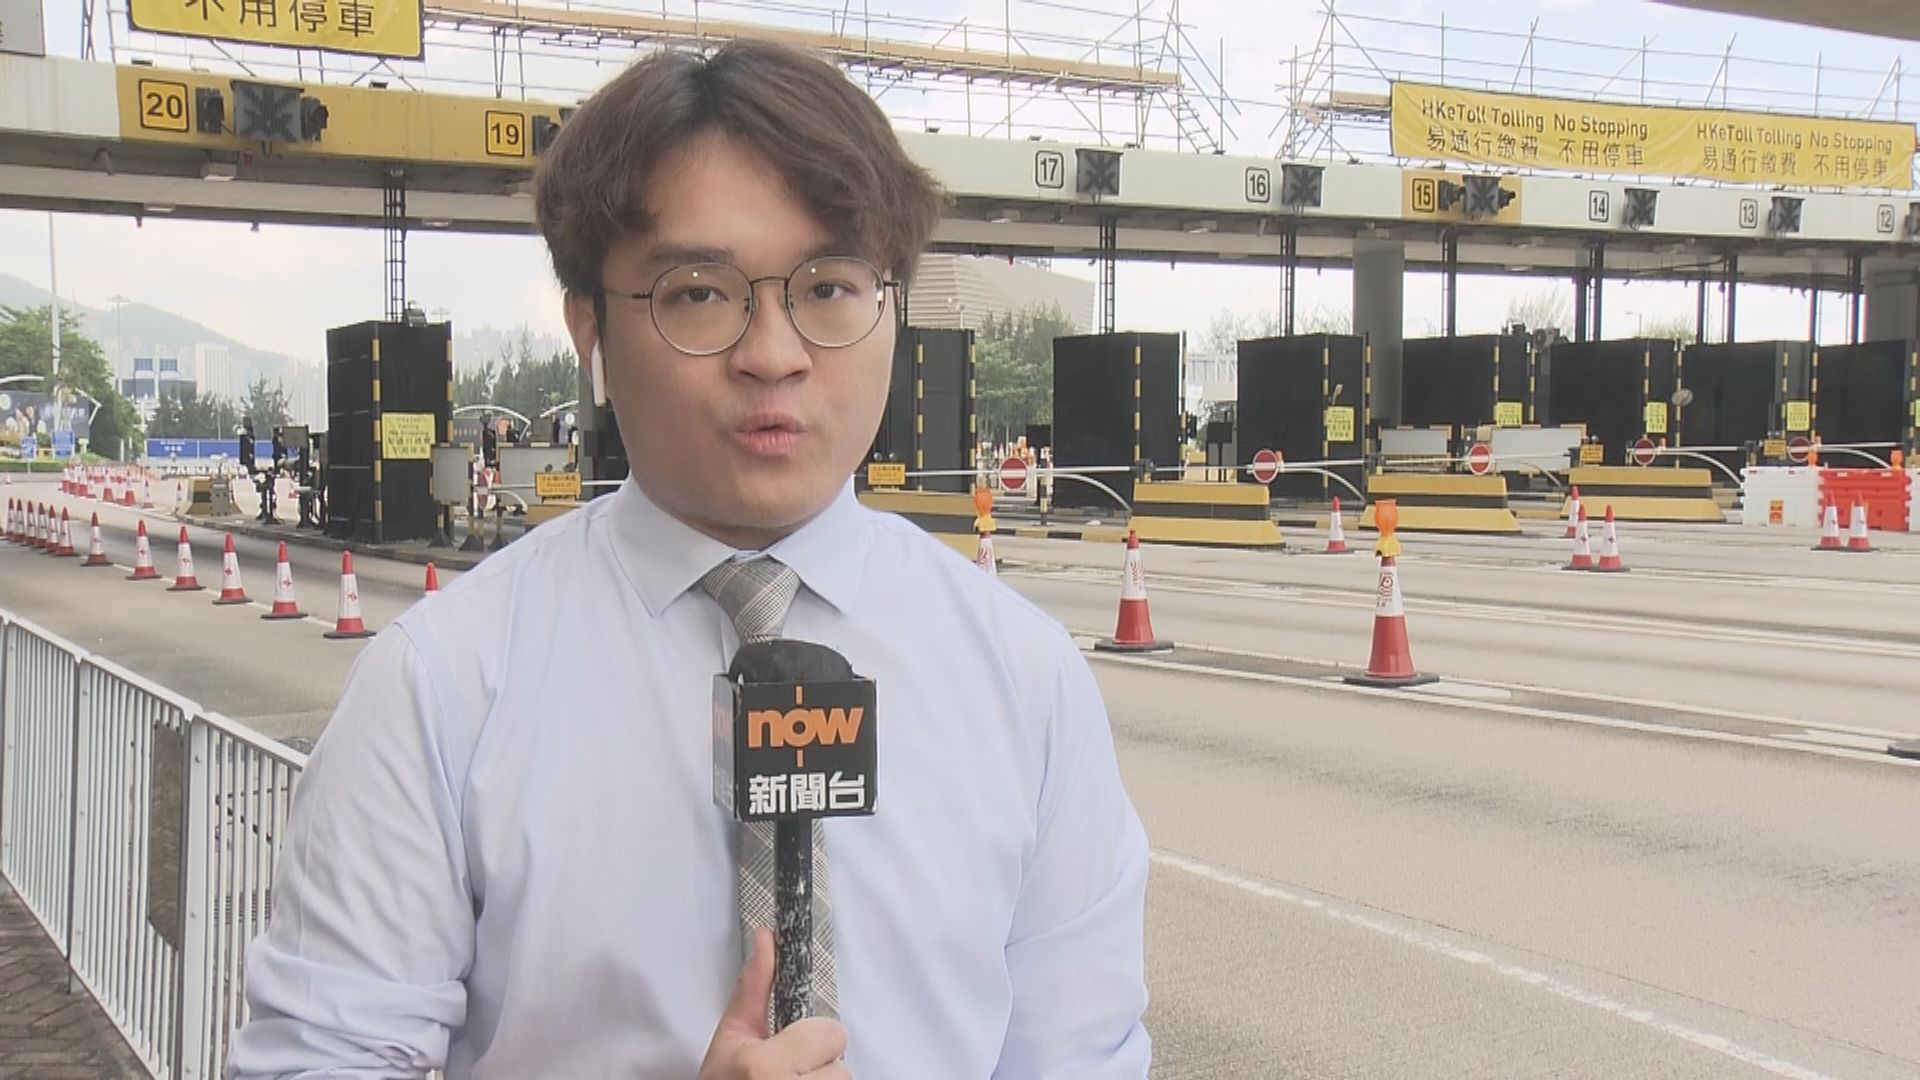 【現場報道】記者直擊西隧實施易通行交通情況